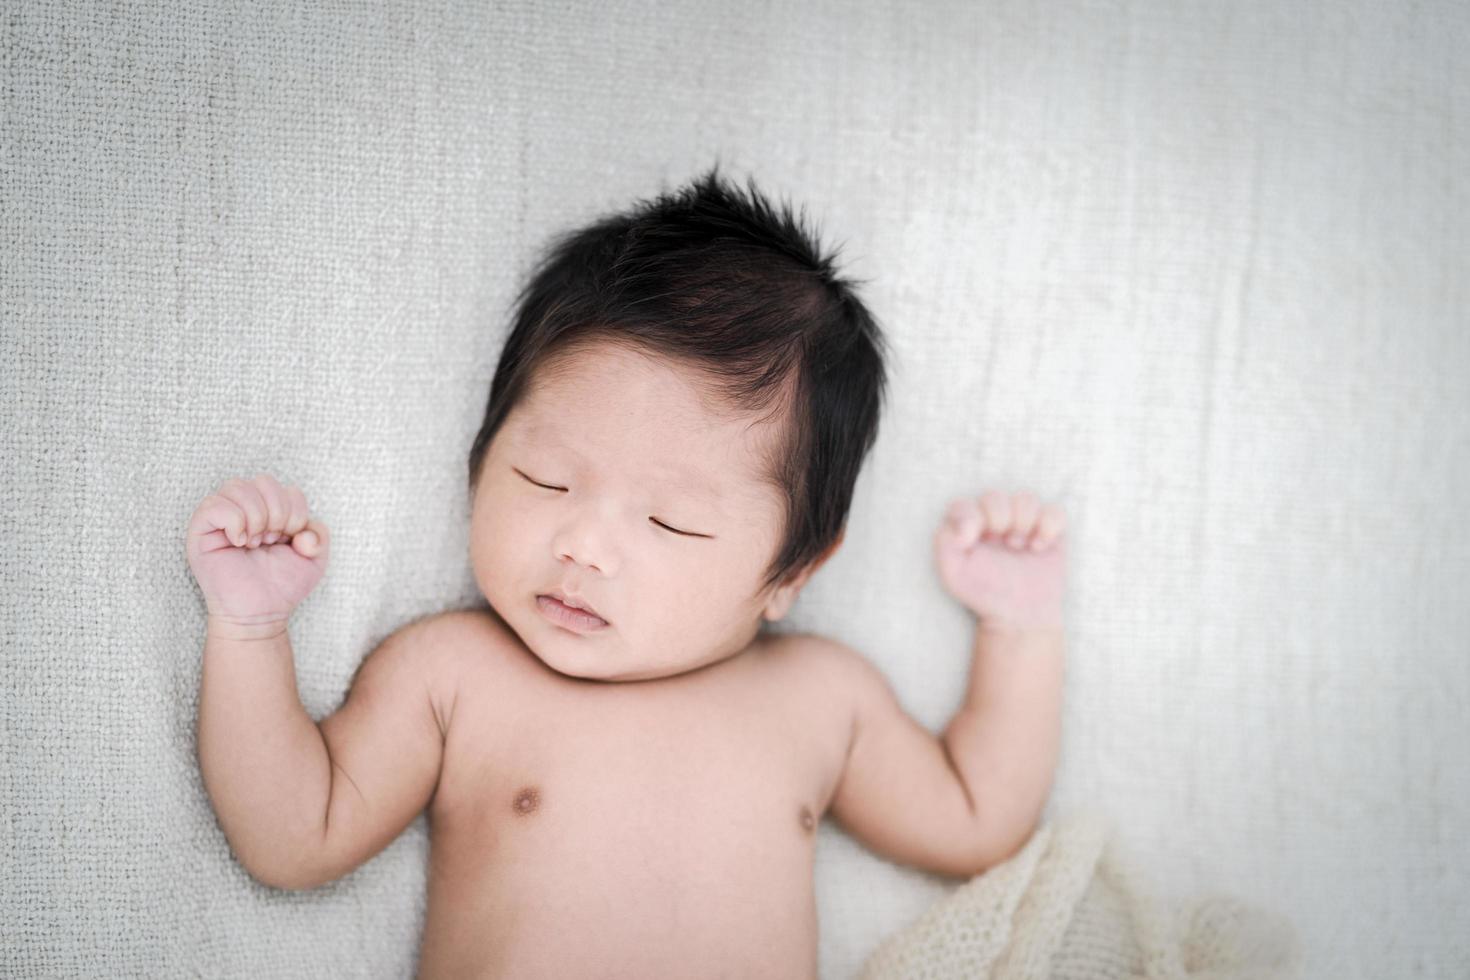 Adorable bebé recién nacido durmiendo pacíficamente sobre una manta blanca, vista superior foto